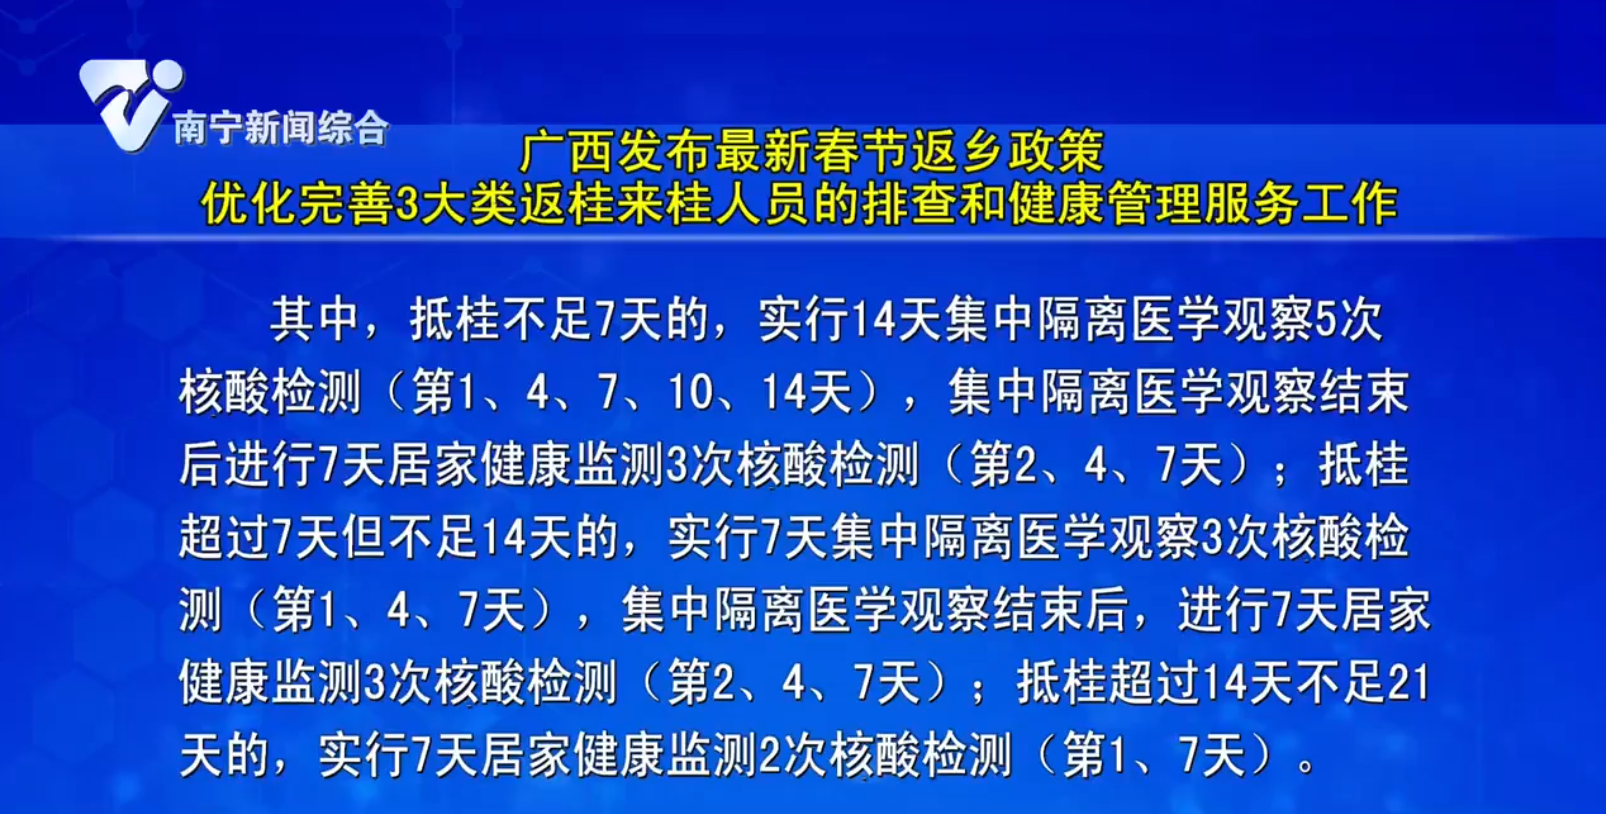 广西发布最新春节返乡政策 优化完善3大类返桂来桂人员的排查和健康管理服务工作